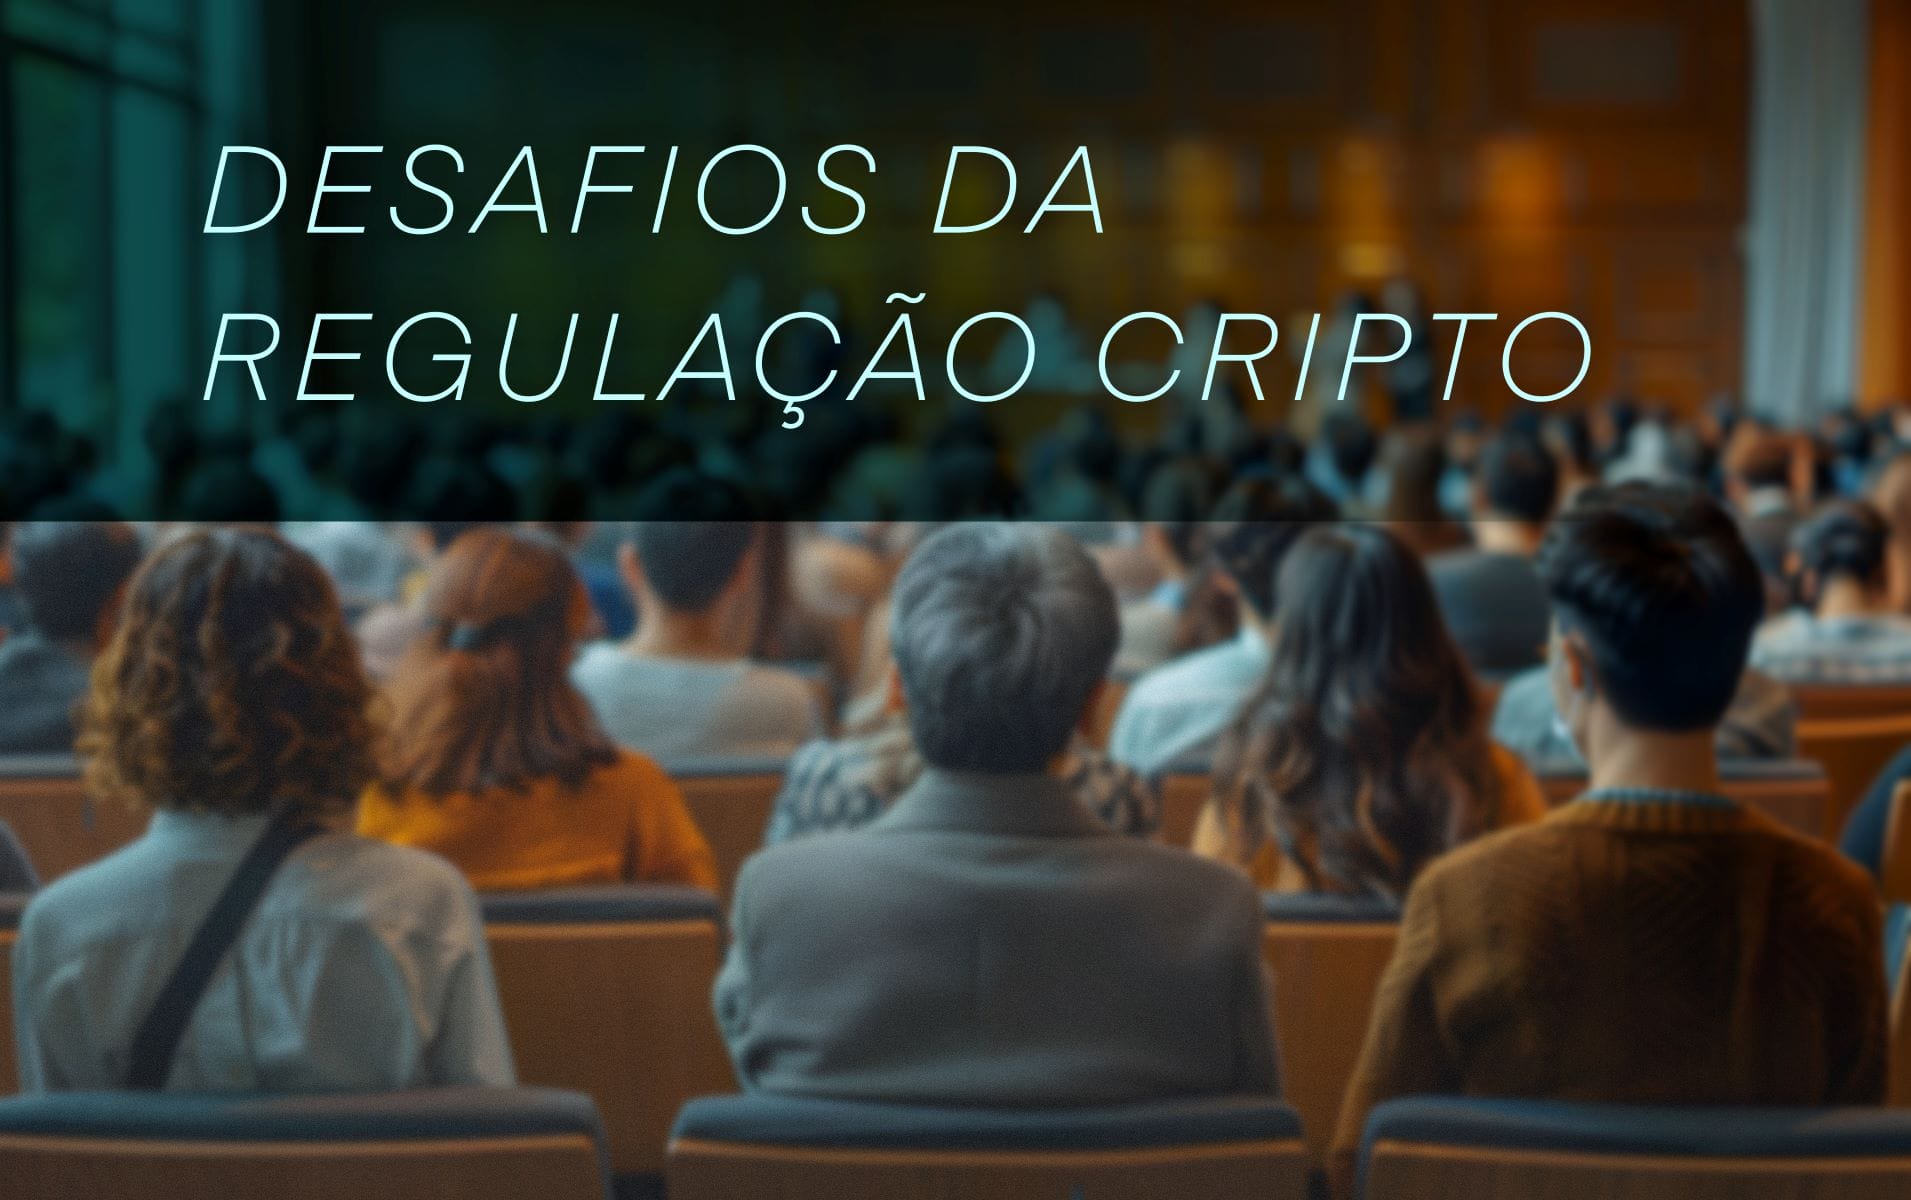 Regulação cripto – Bernardo Srur, diretor-presidente da ABcripto, explica a importância da segregação patrimonial no mercado